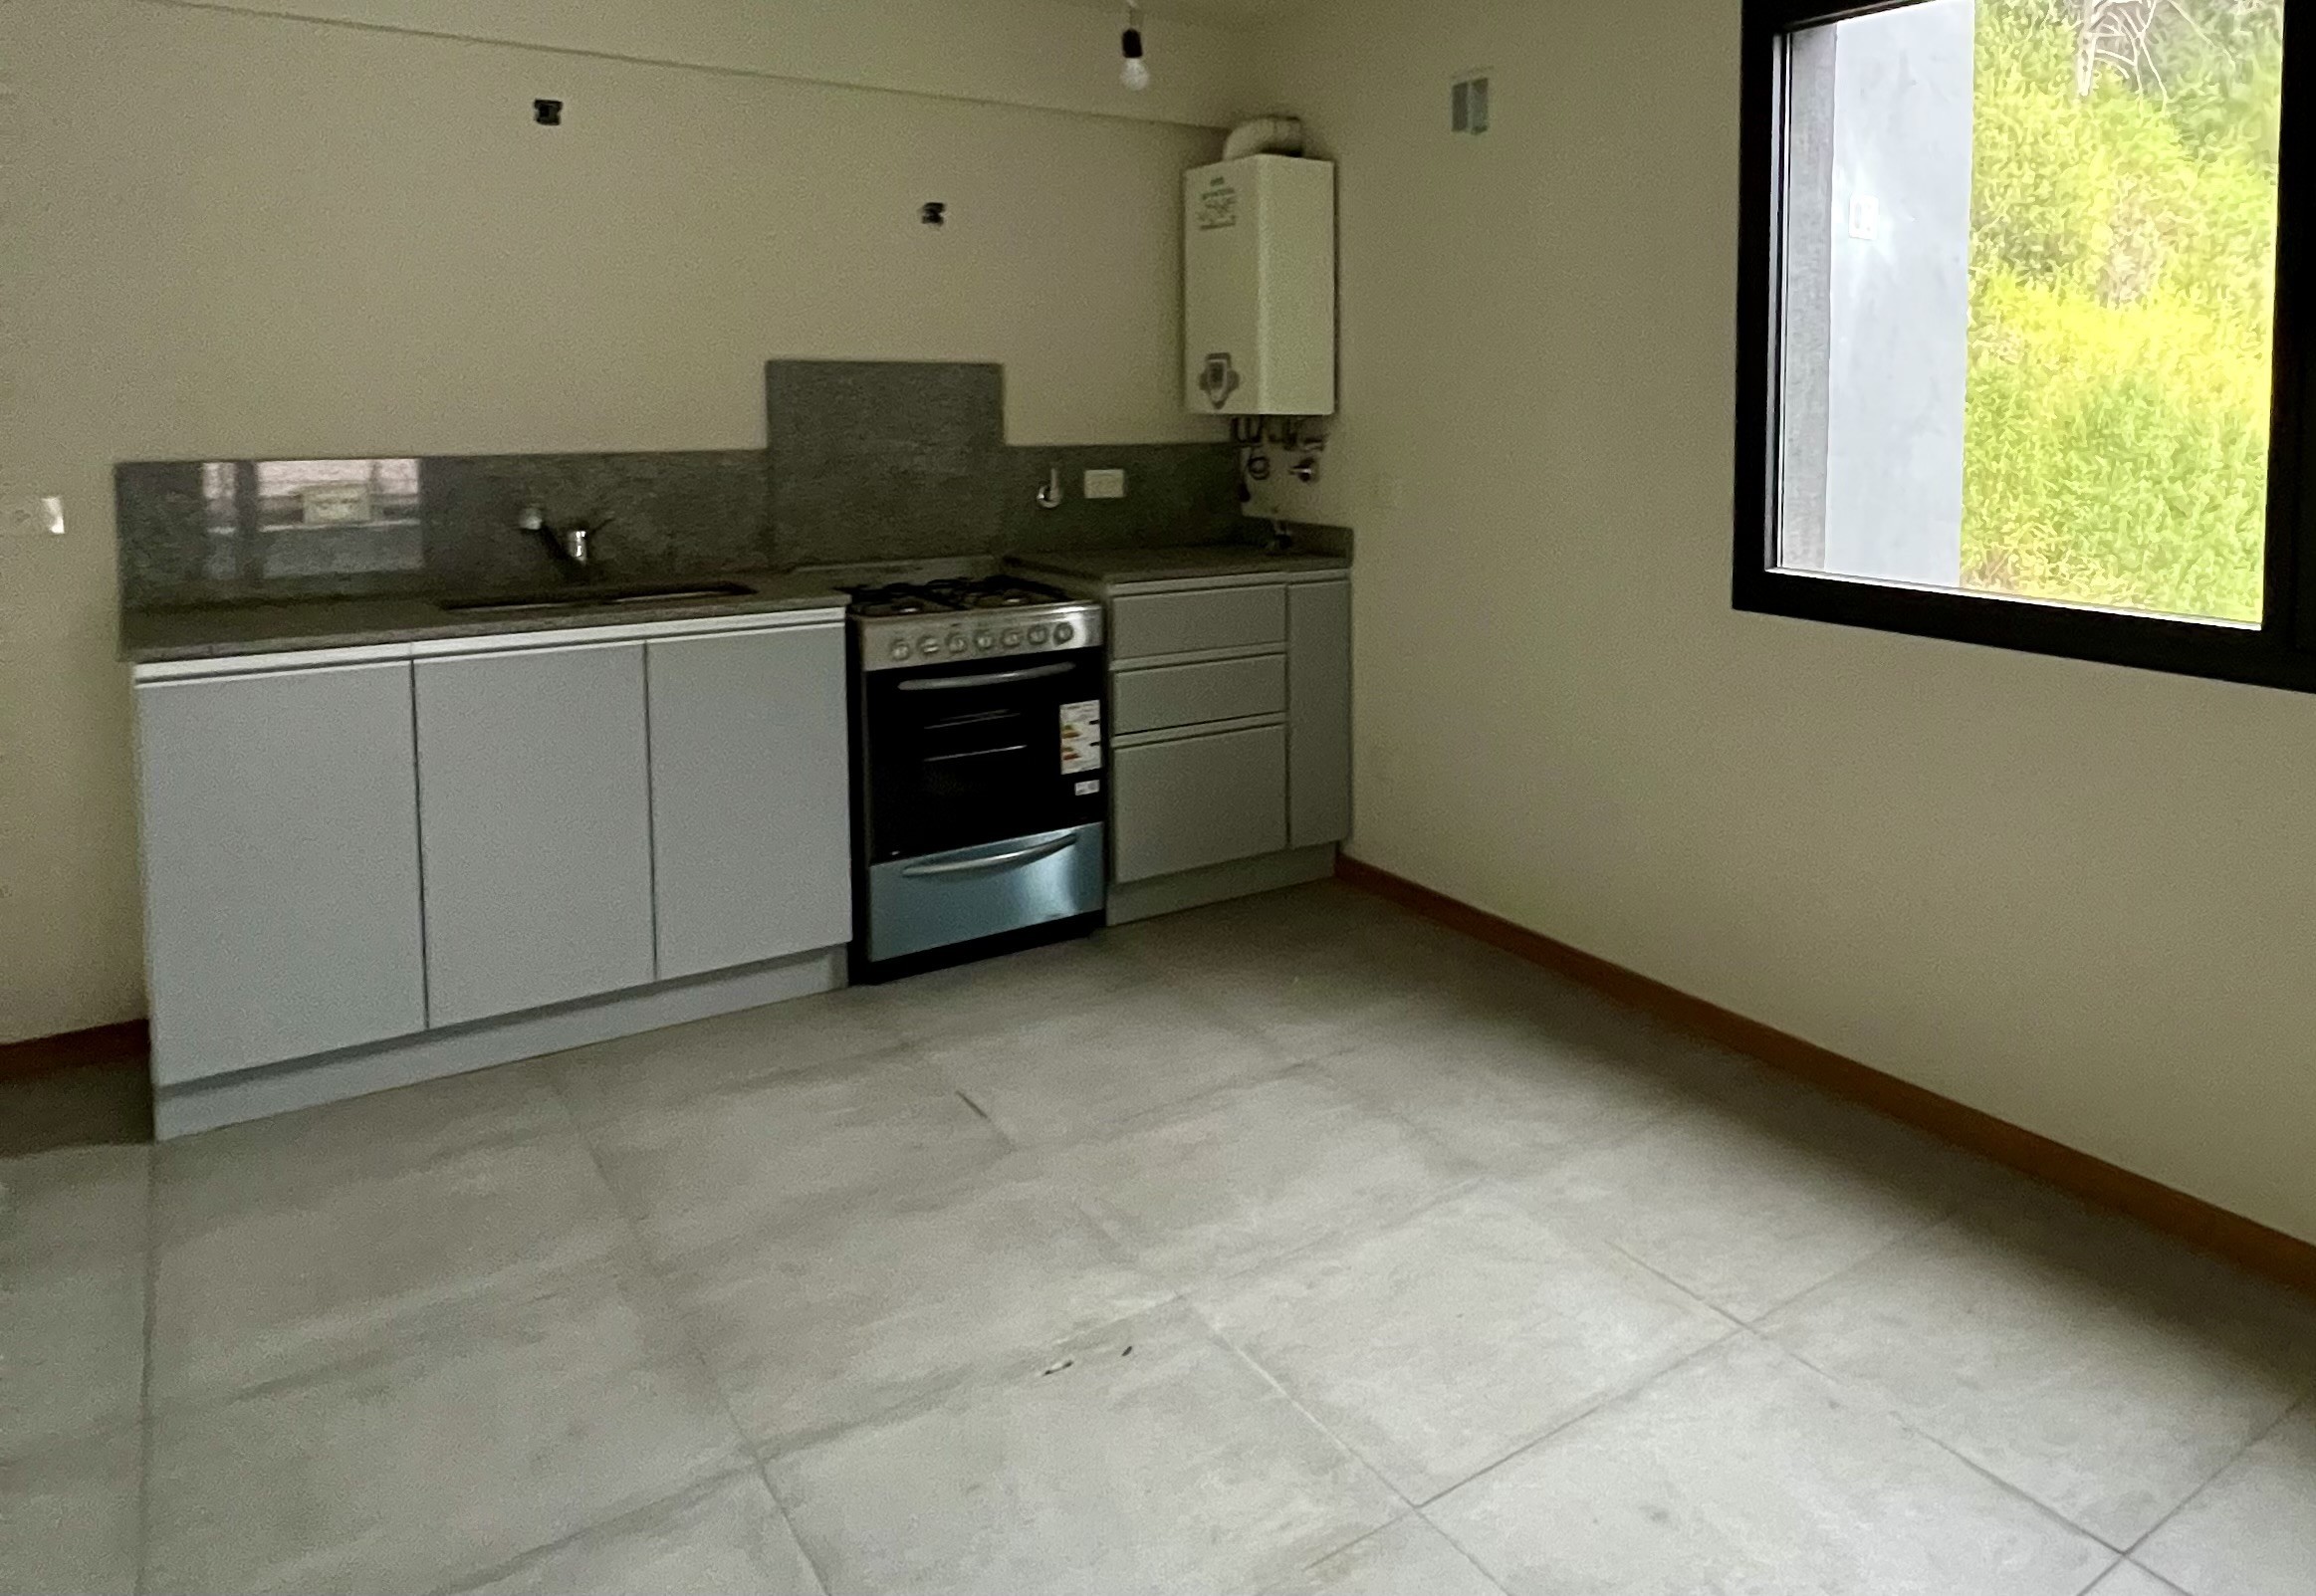 D209 - Monoambiente a estrenar de 1 dormitorio 48  m2 y 15 m2 de terraza  - Bajada de los Andes - Zona Centro